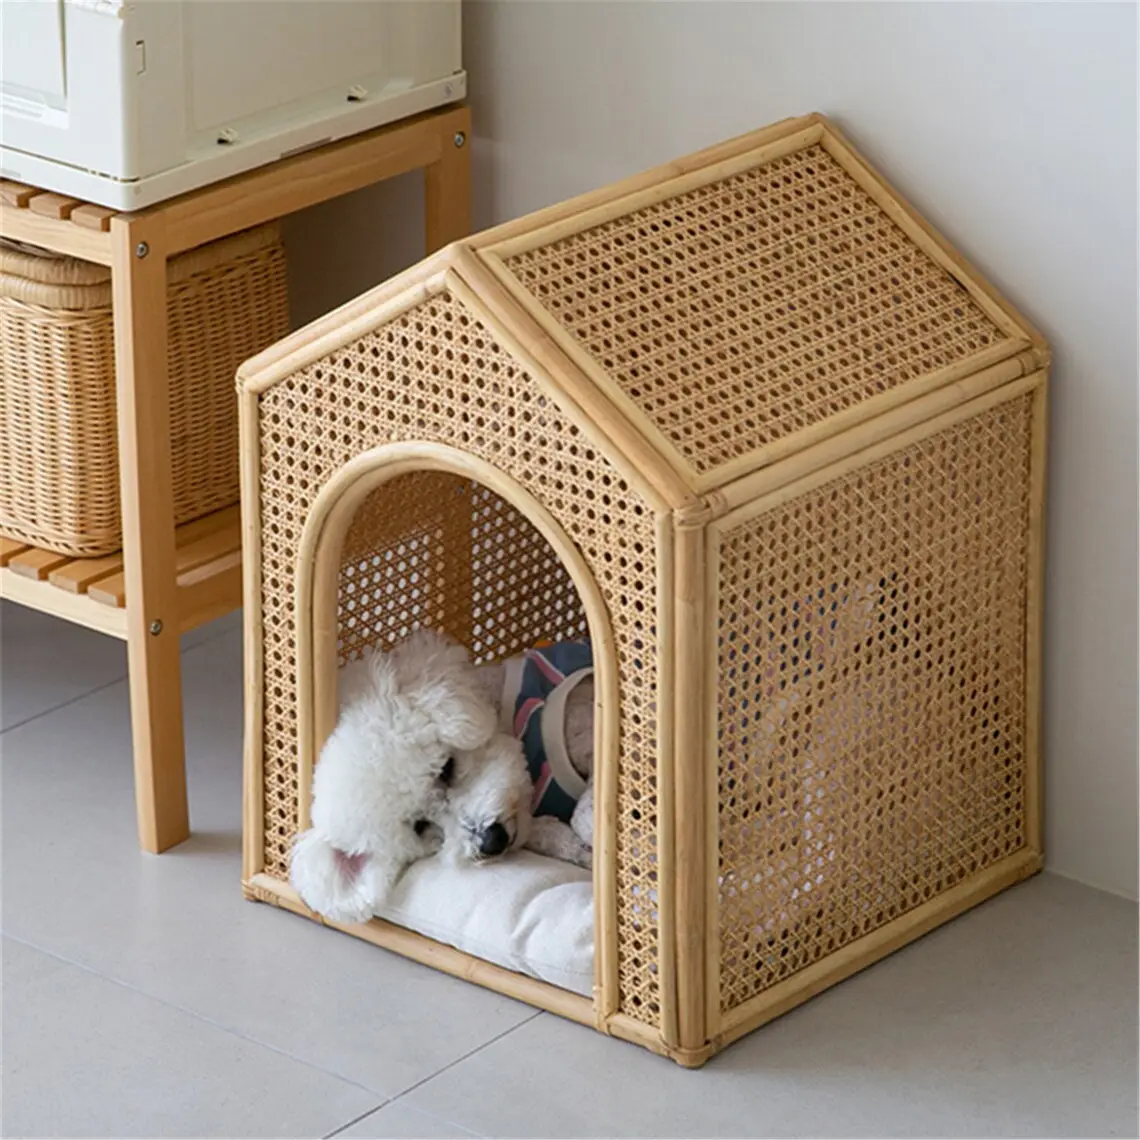 บ้านสุนัขสไตล์ญี่ปุ่นผ้าหวายธรรมชาติสานพร้อมเสื่อผ้าฝ้าย